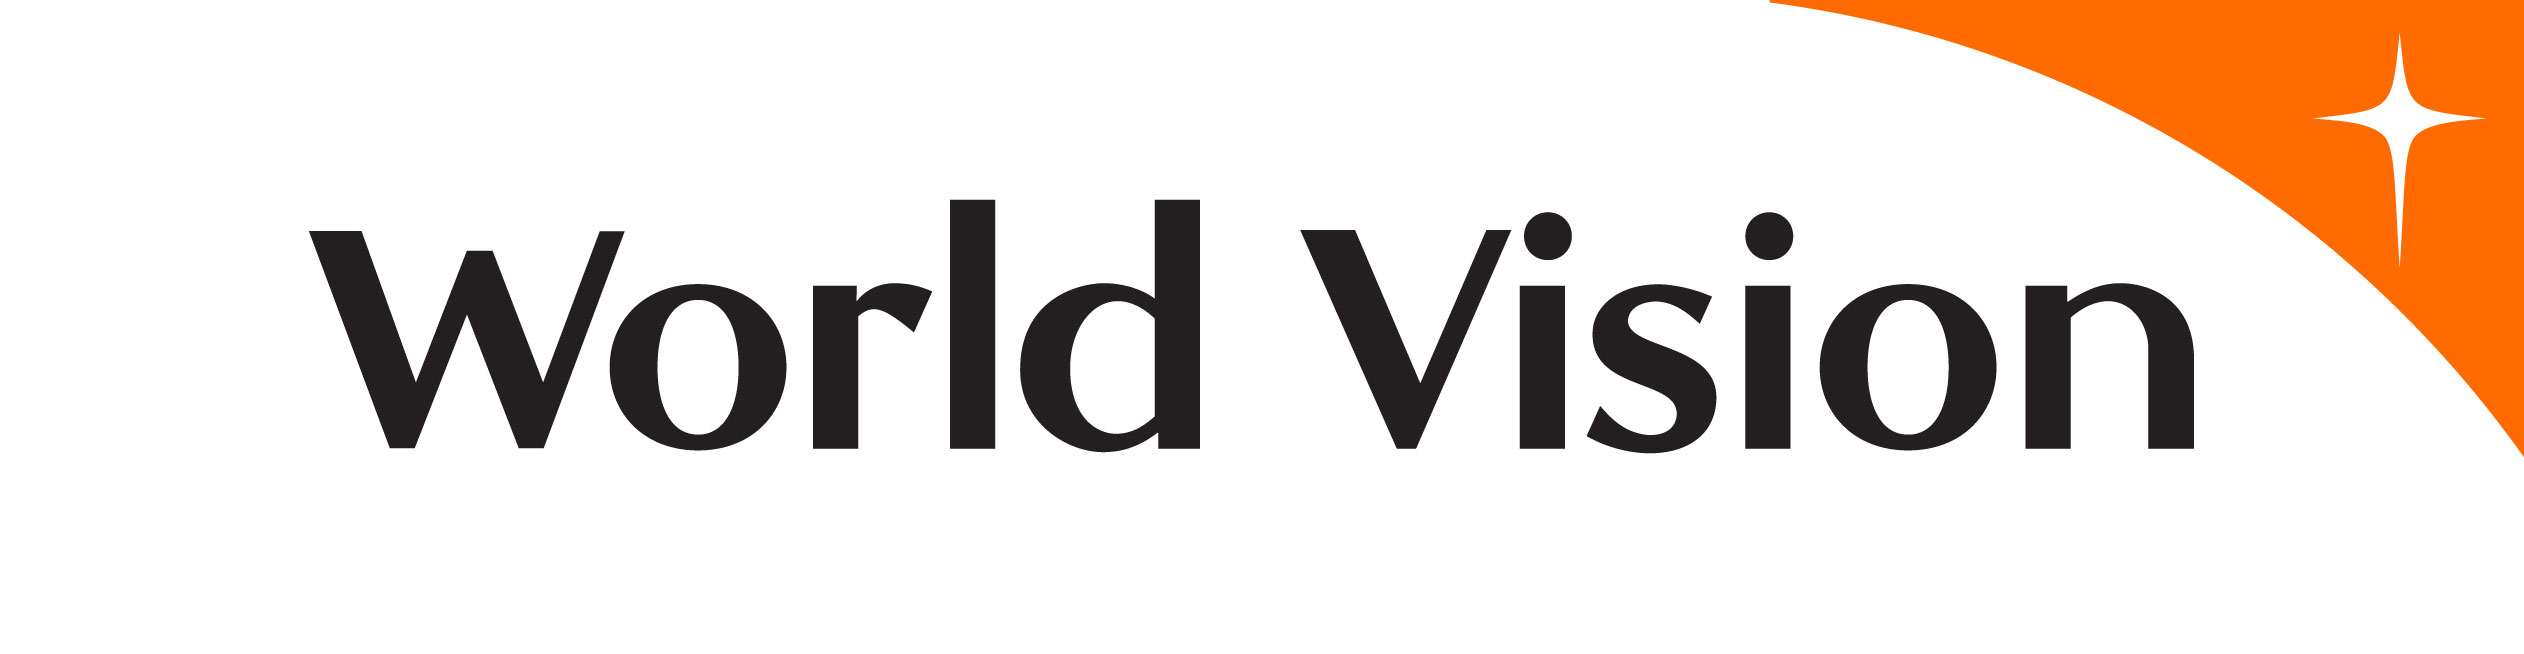 World Vision China logo